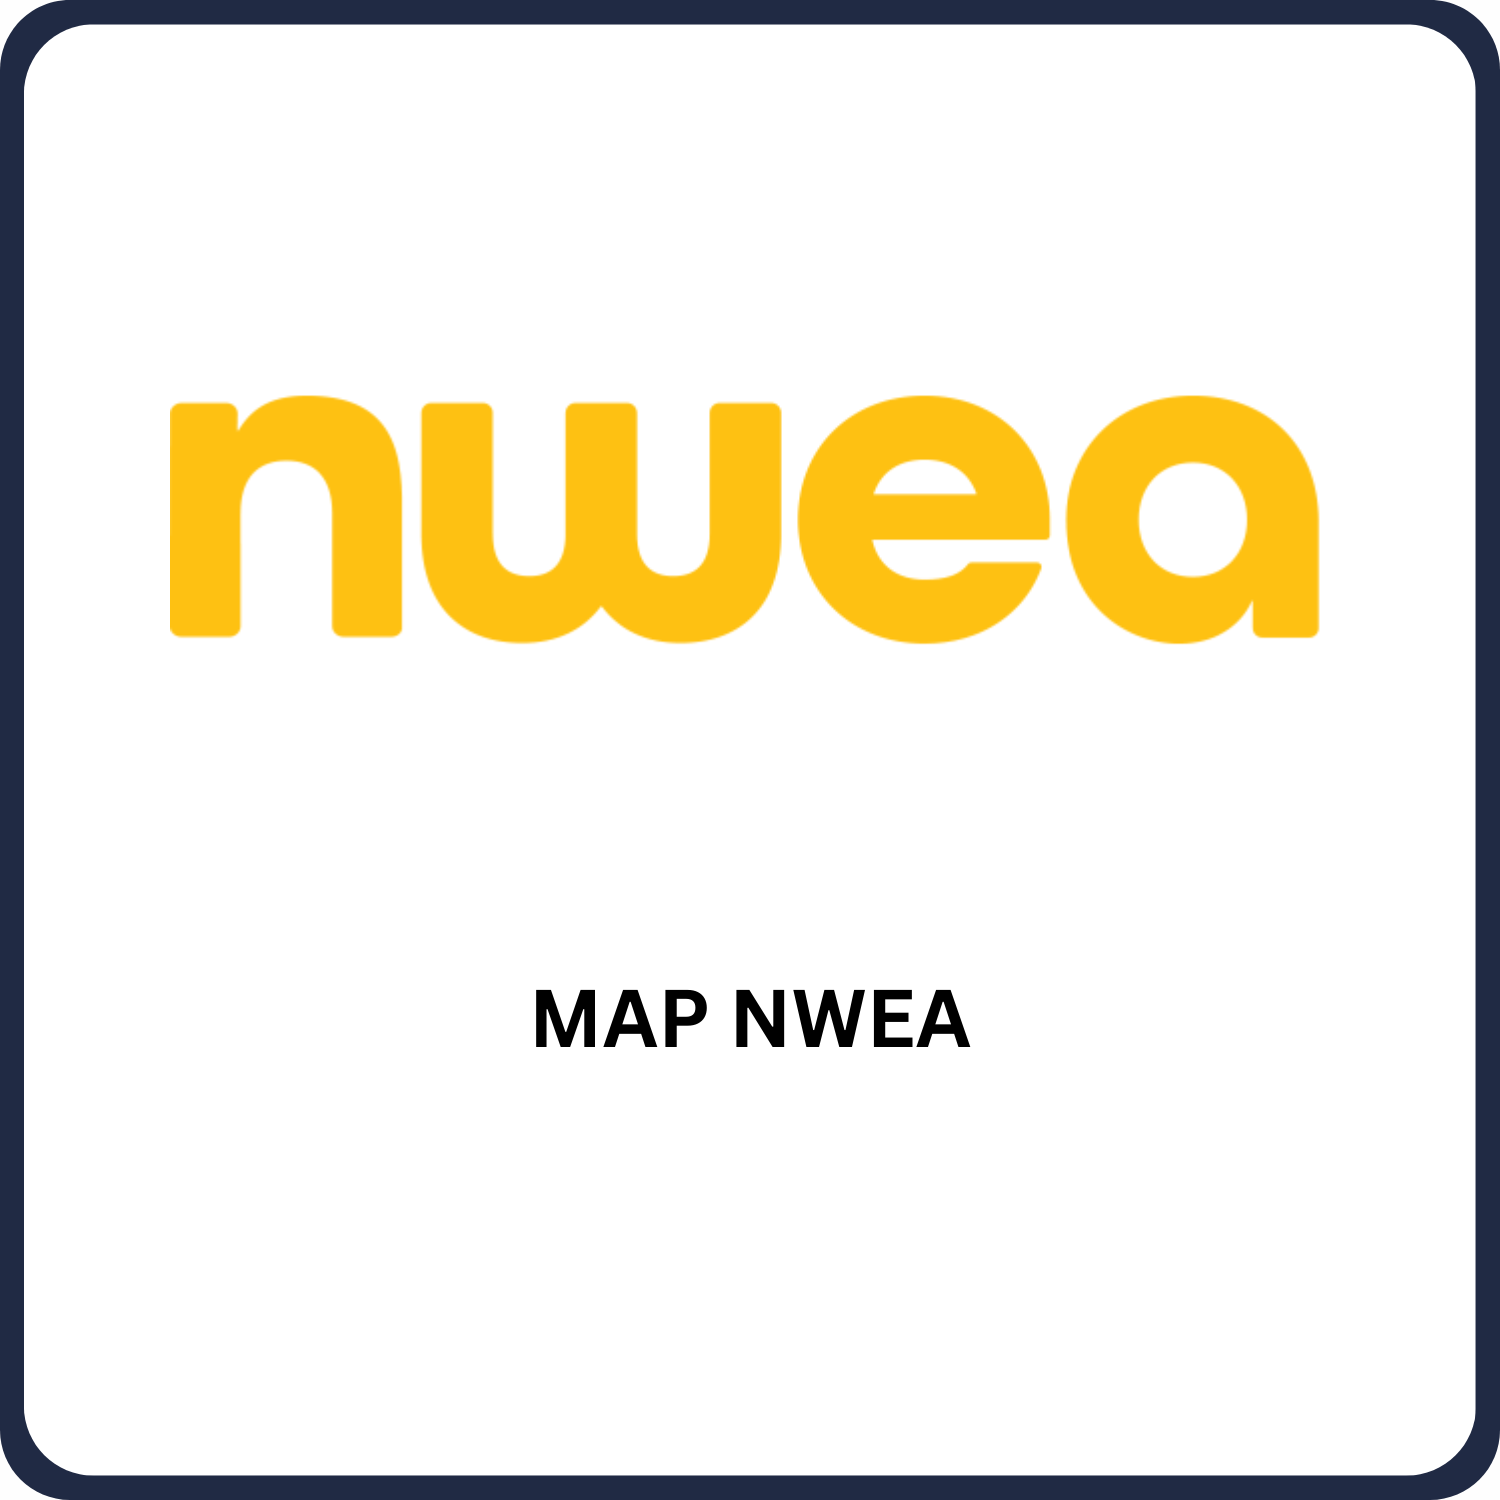 MAP NWEA